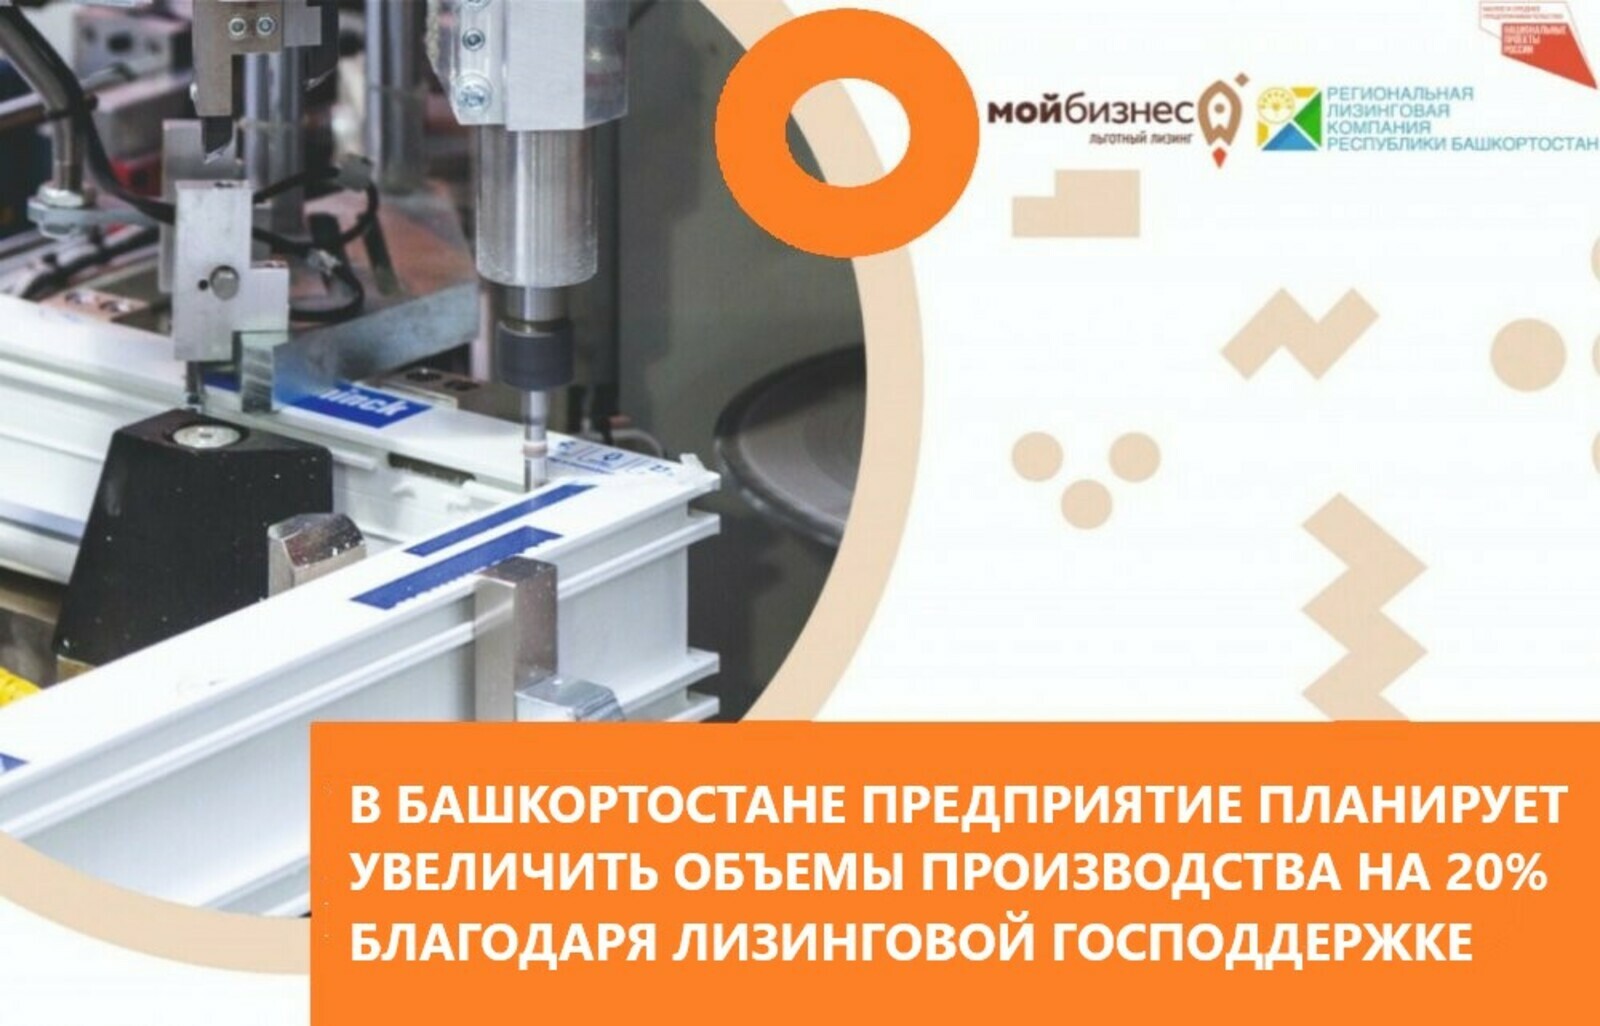 В Башкортостане предприятие планирует увеличить объемы производства на 20% благодаря лизинговой господдержке